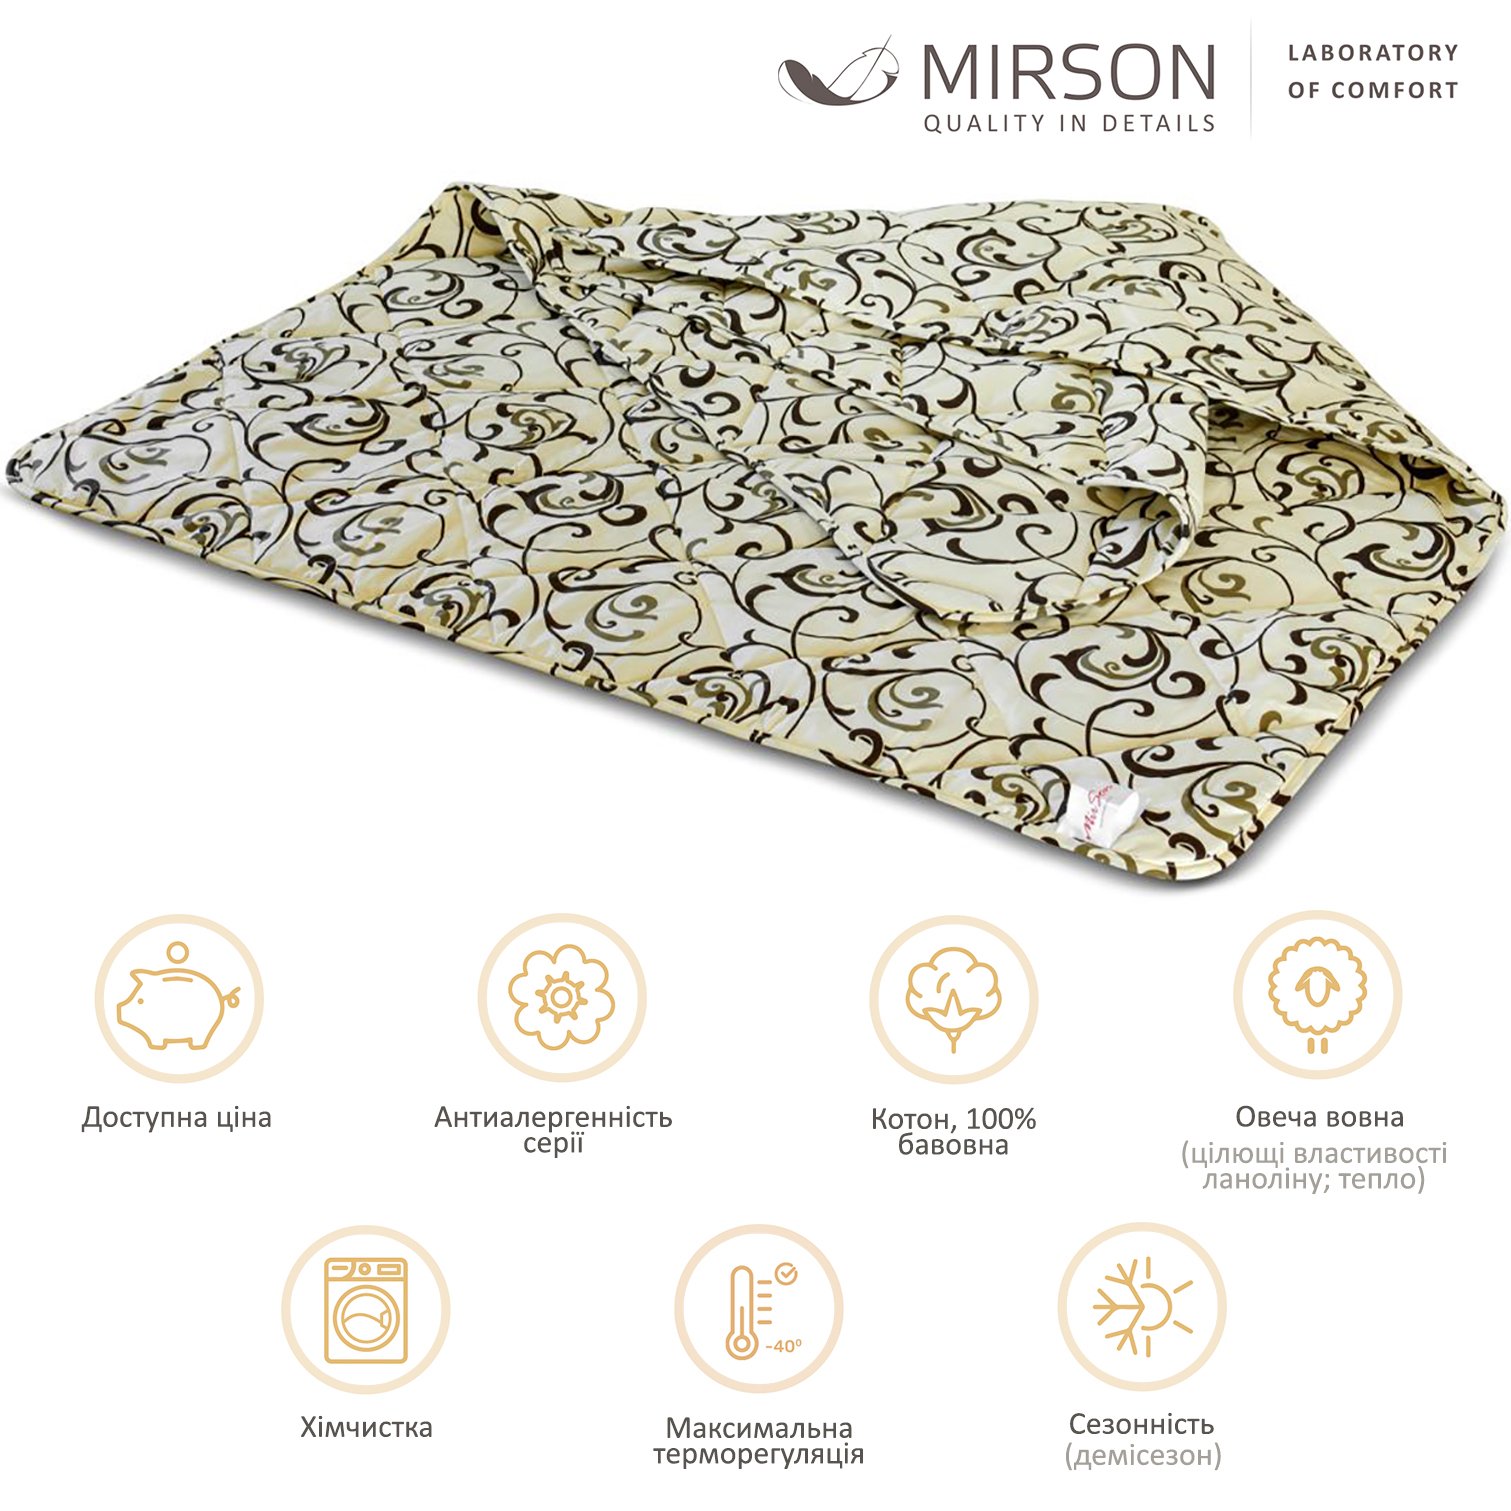 Одеяло шерстяное MirSon №017, демисезонное, 110x140 см, бежевое с узором - фото 4